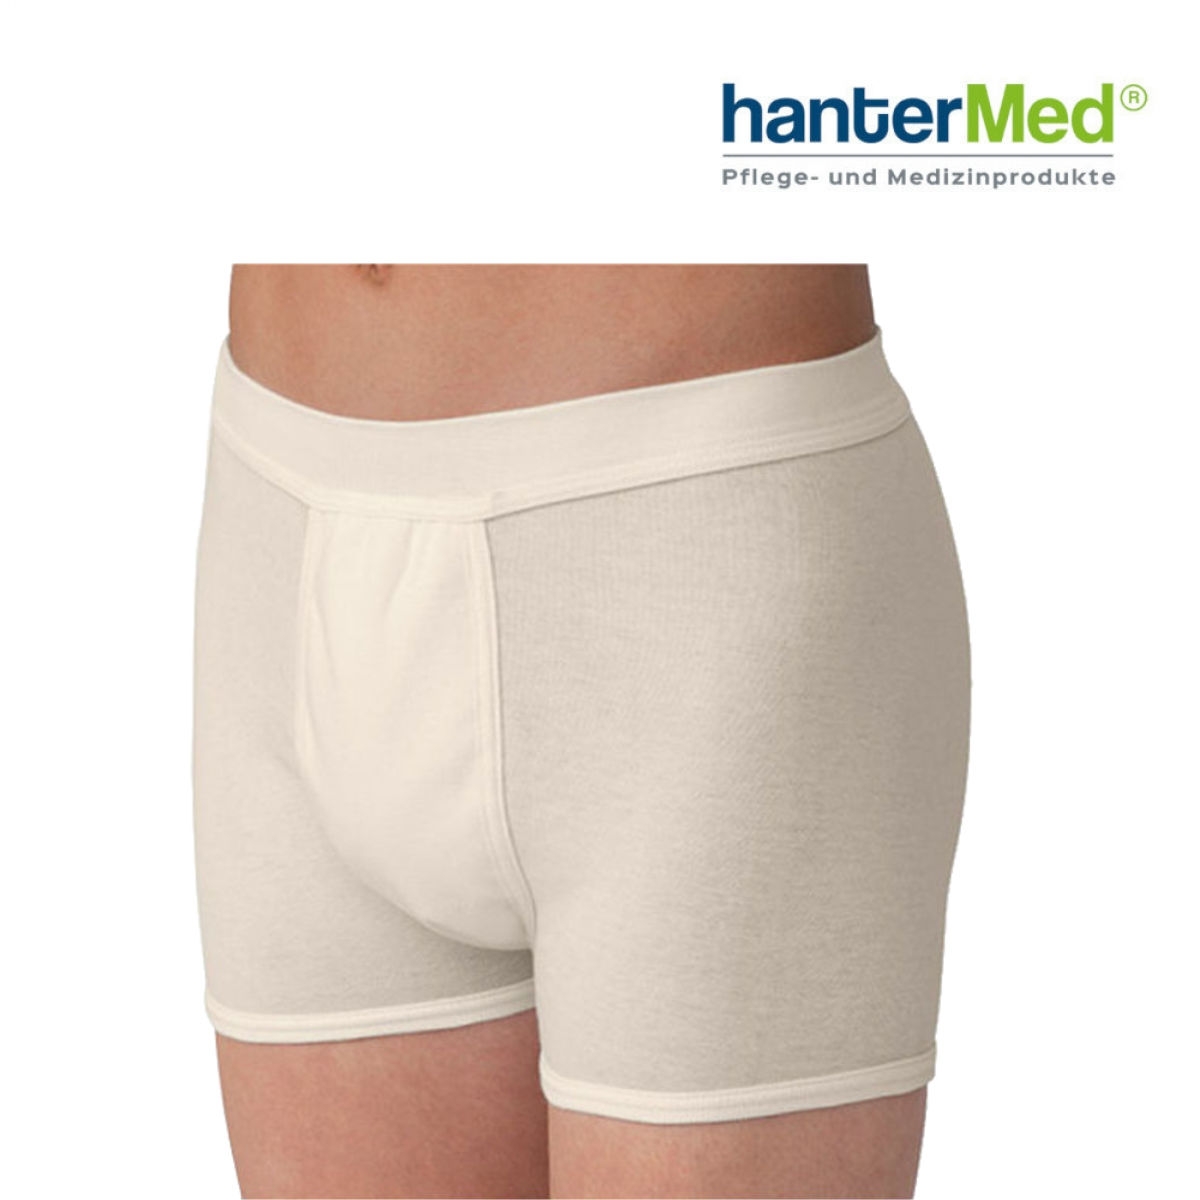 hantermann deutschland herren inkontinenz shorts